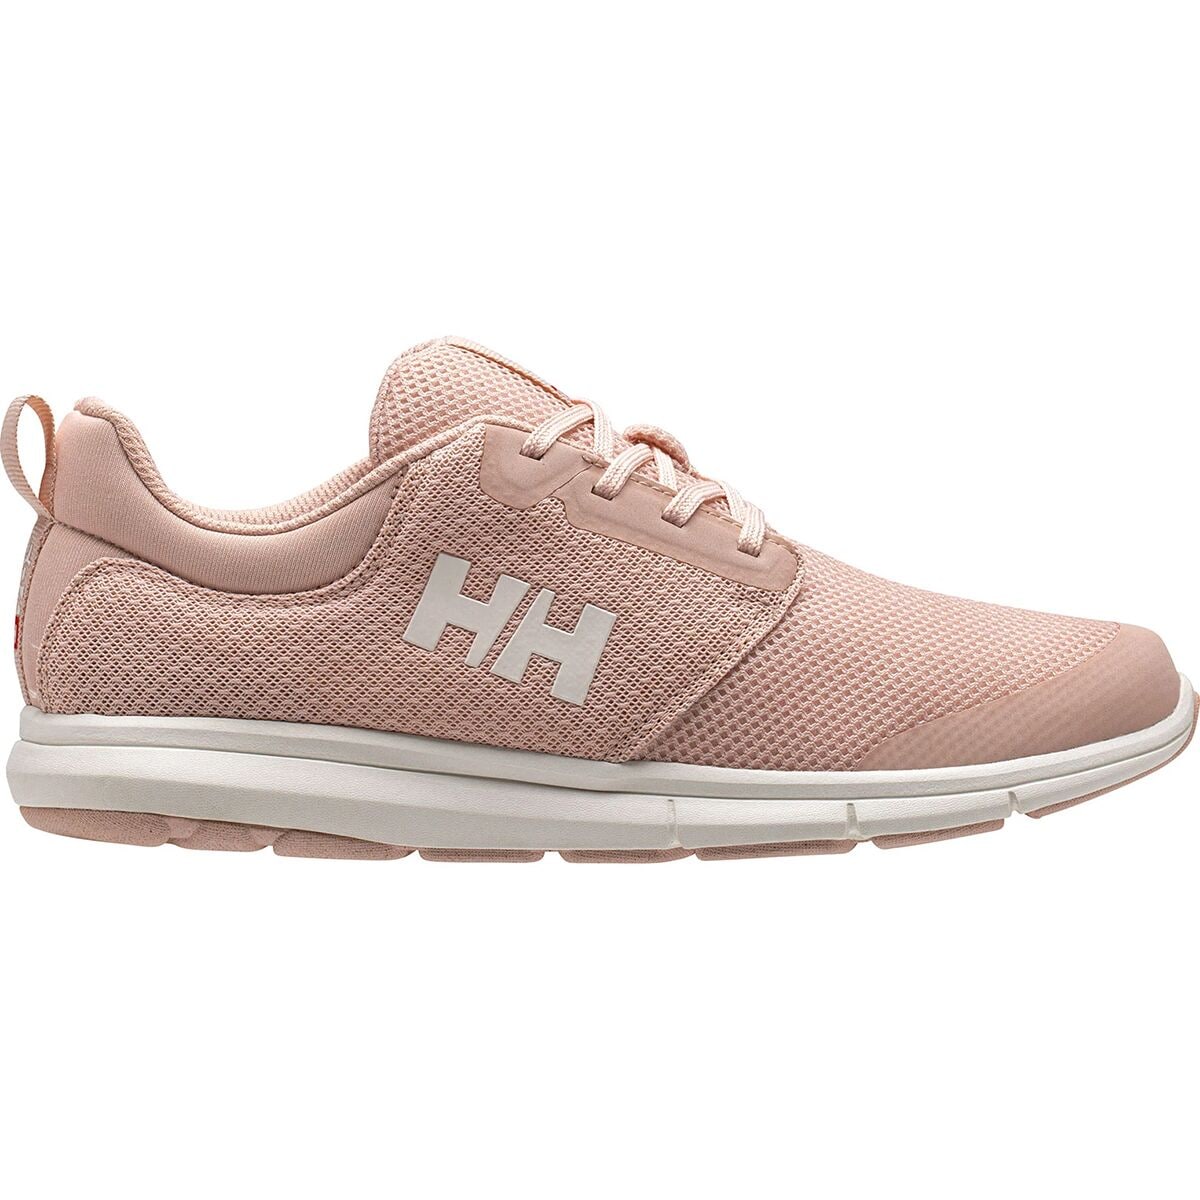 Helly Hansen Feathering Shoe - Women's